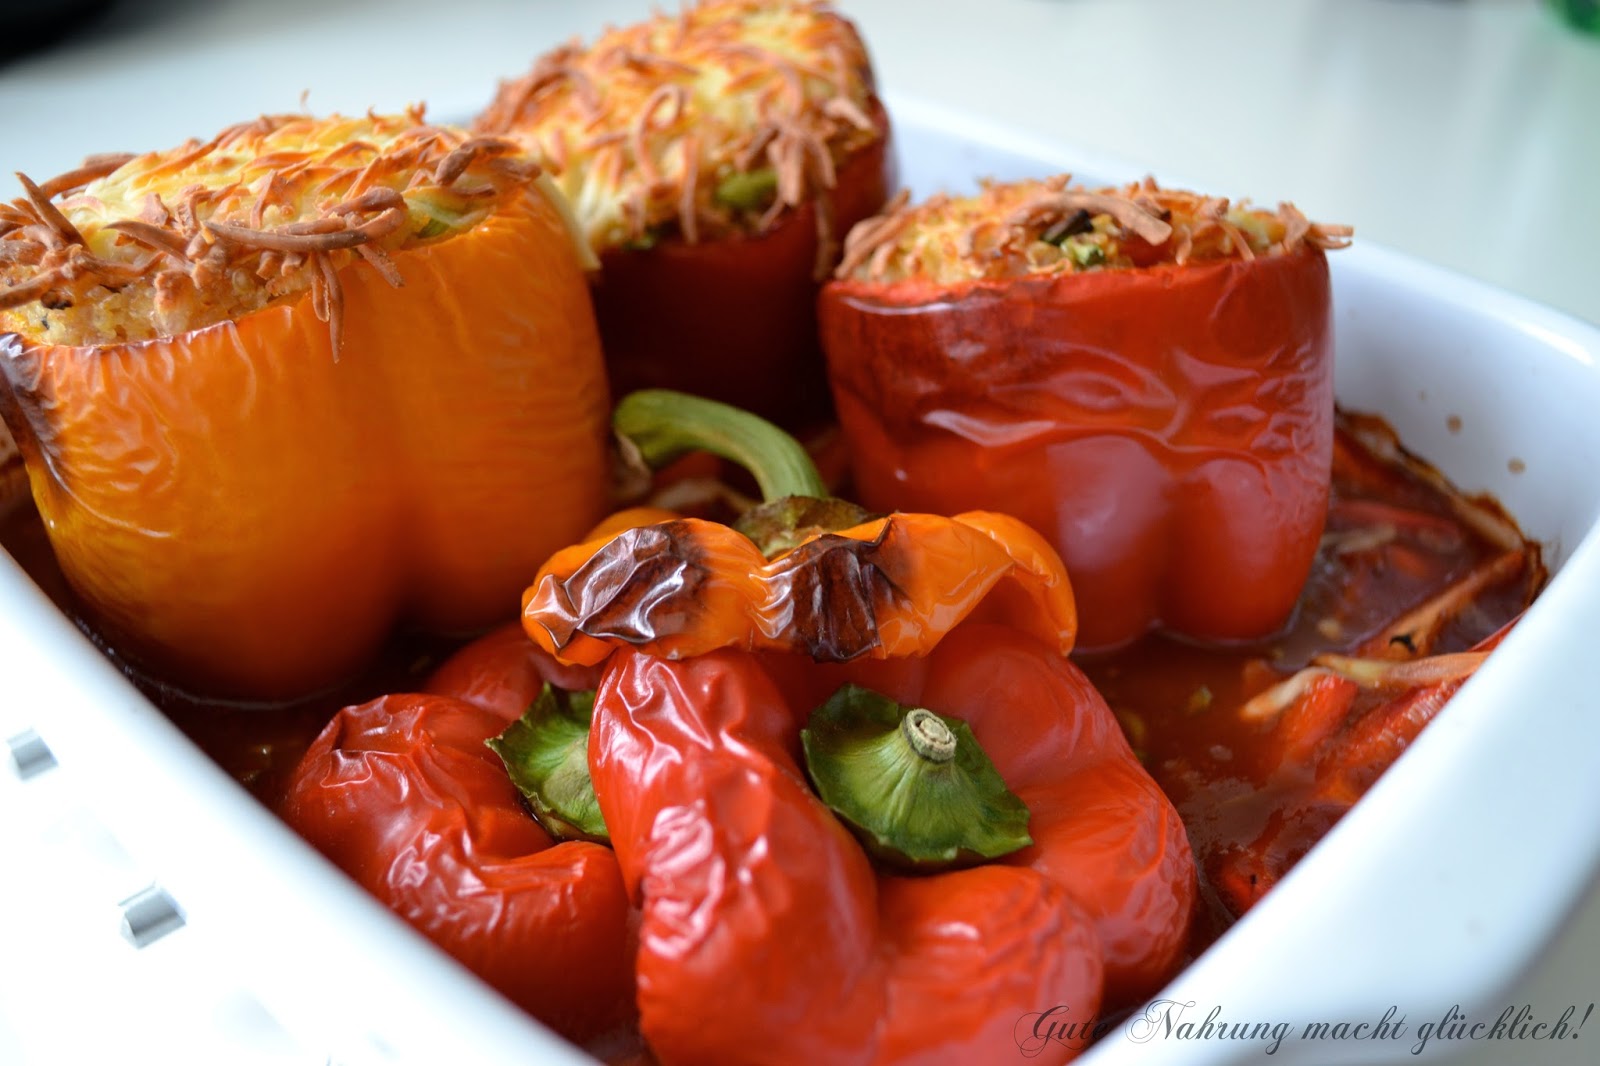 Gute Nahrung macht glücklich : Gefüllte Paprika mit Quinoa